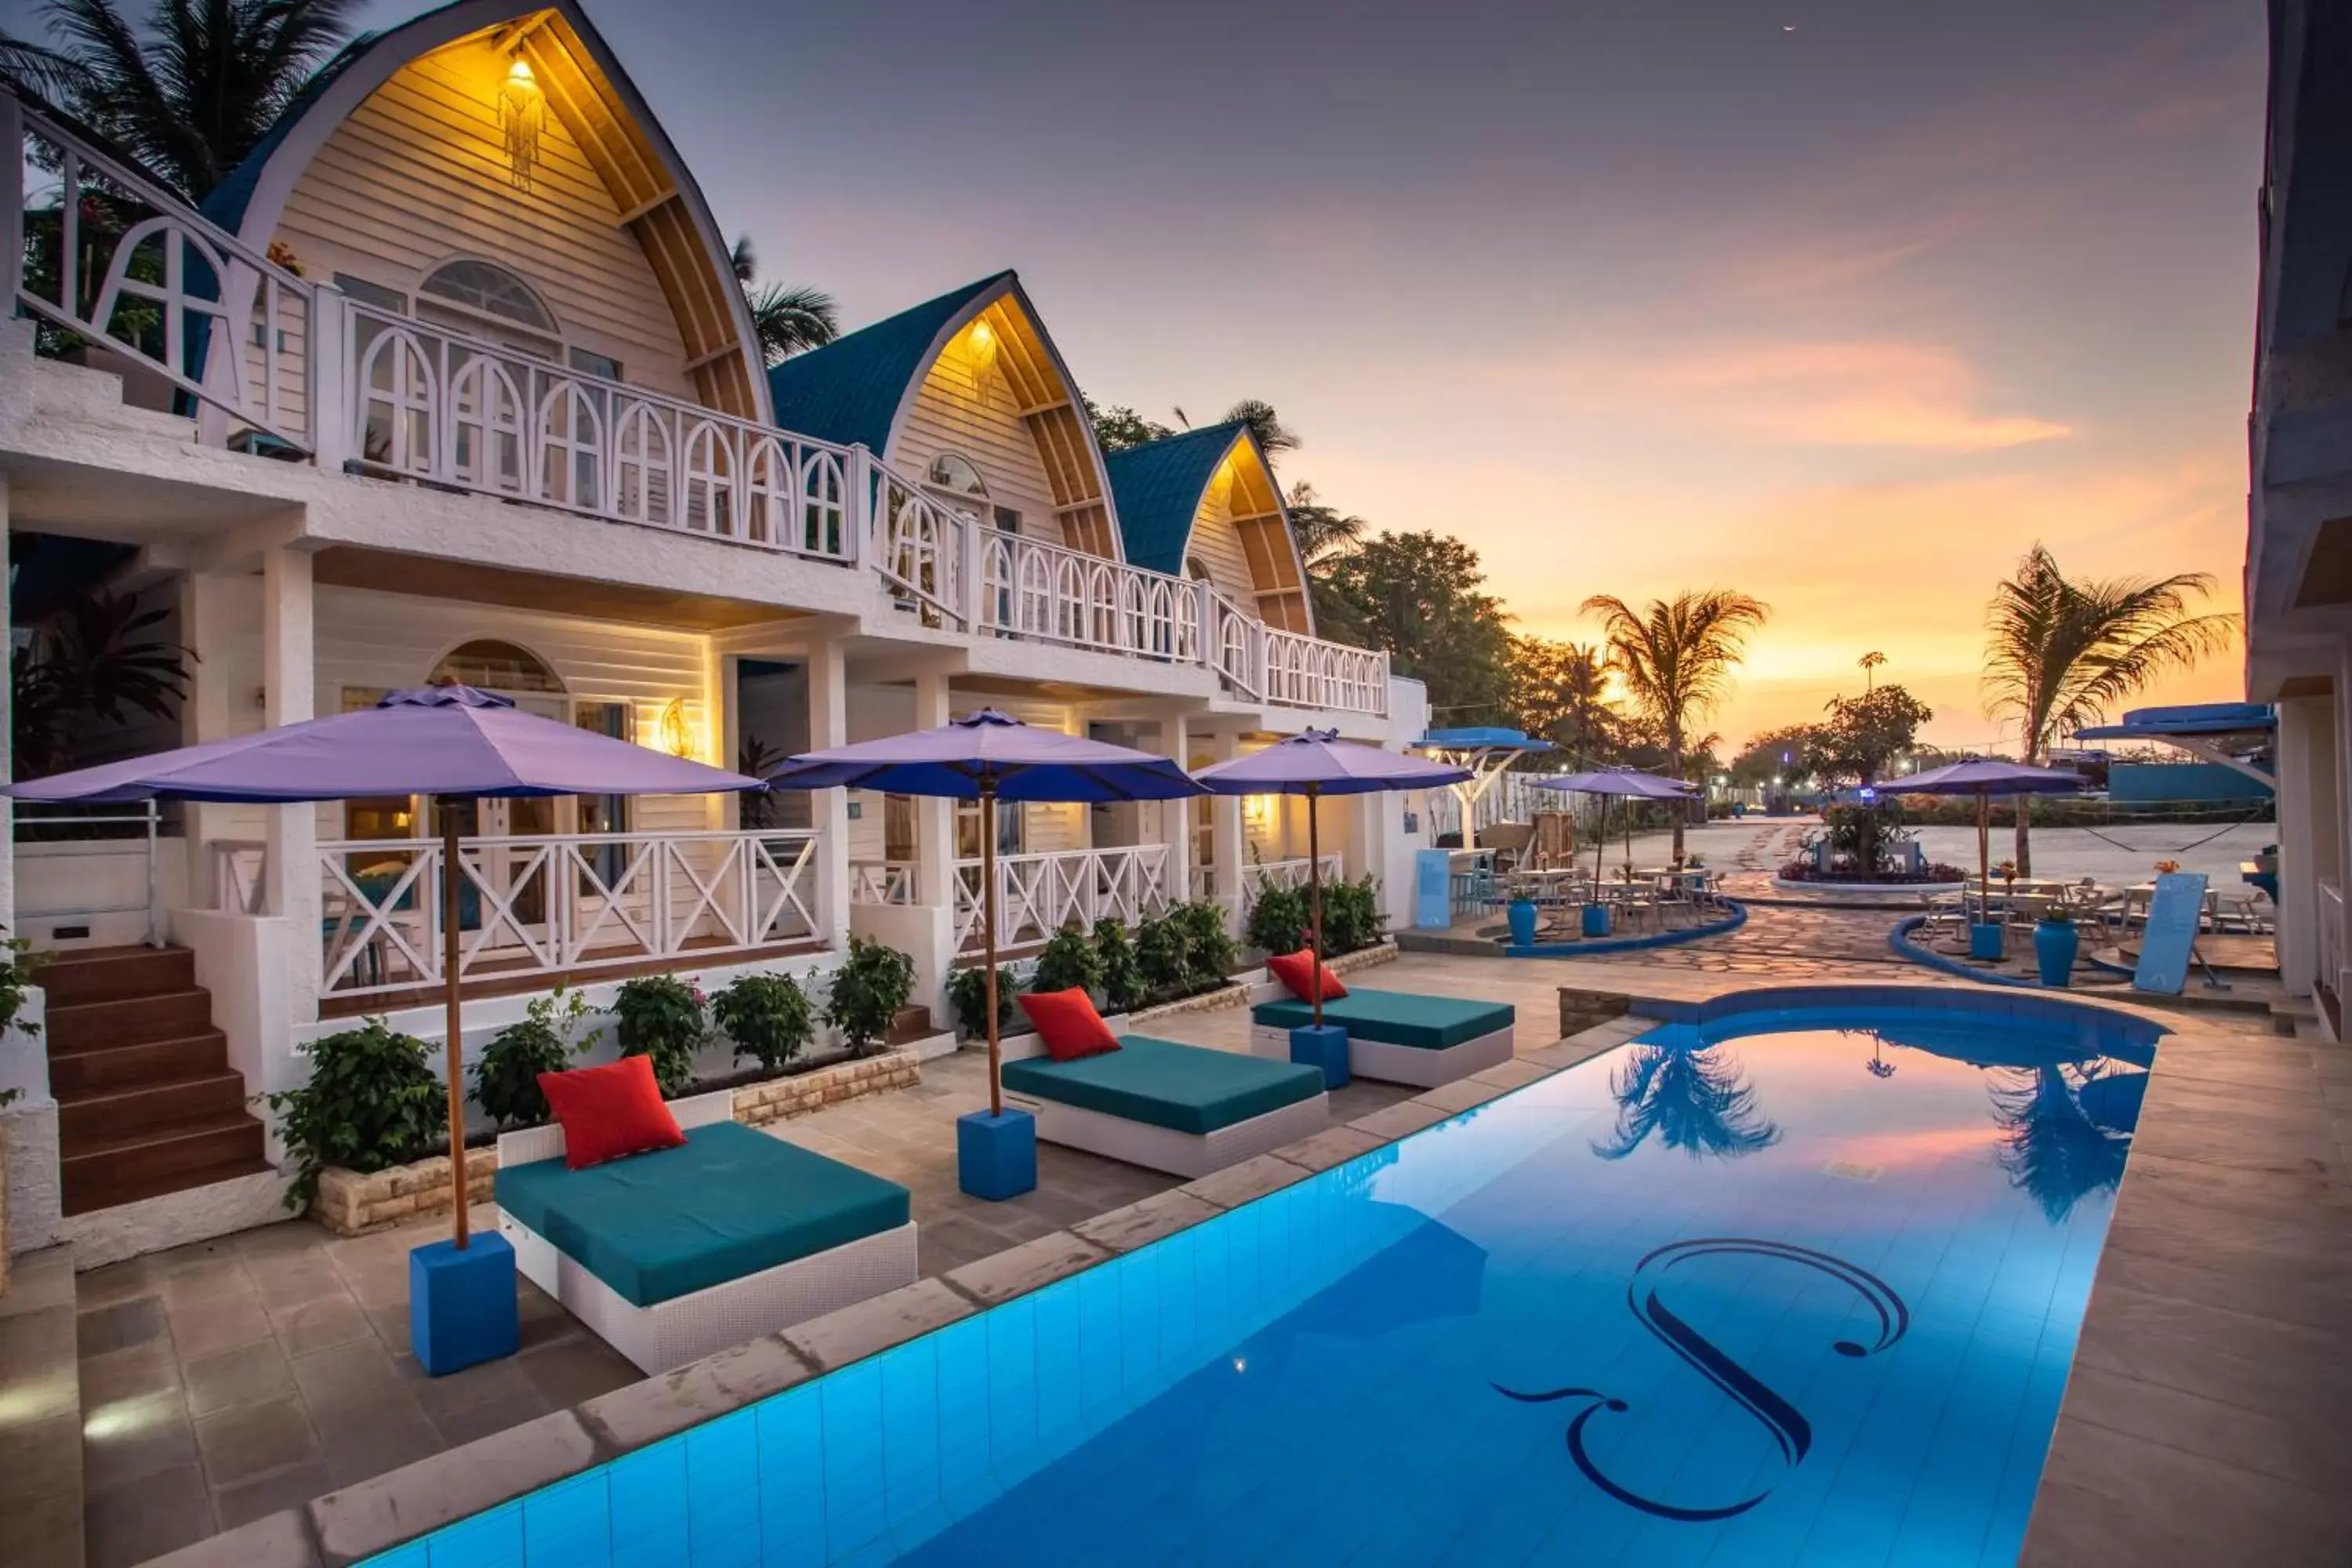 Property building, Swimming Pool in Santorini Beach Resort